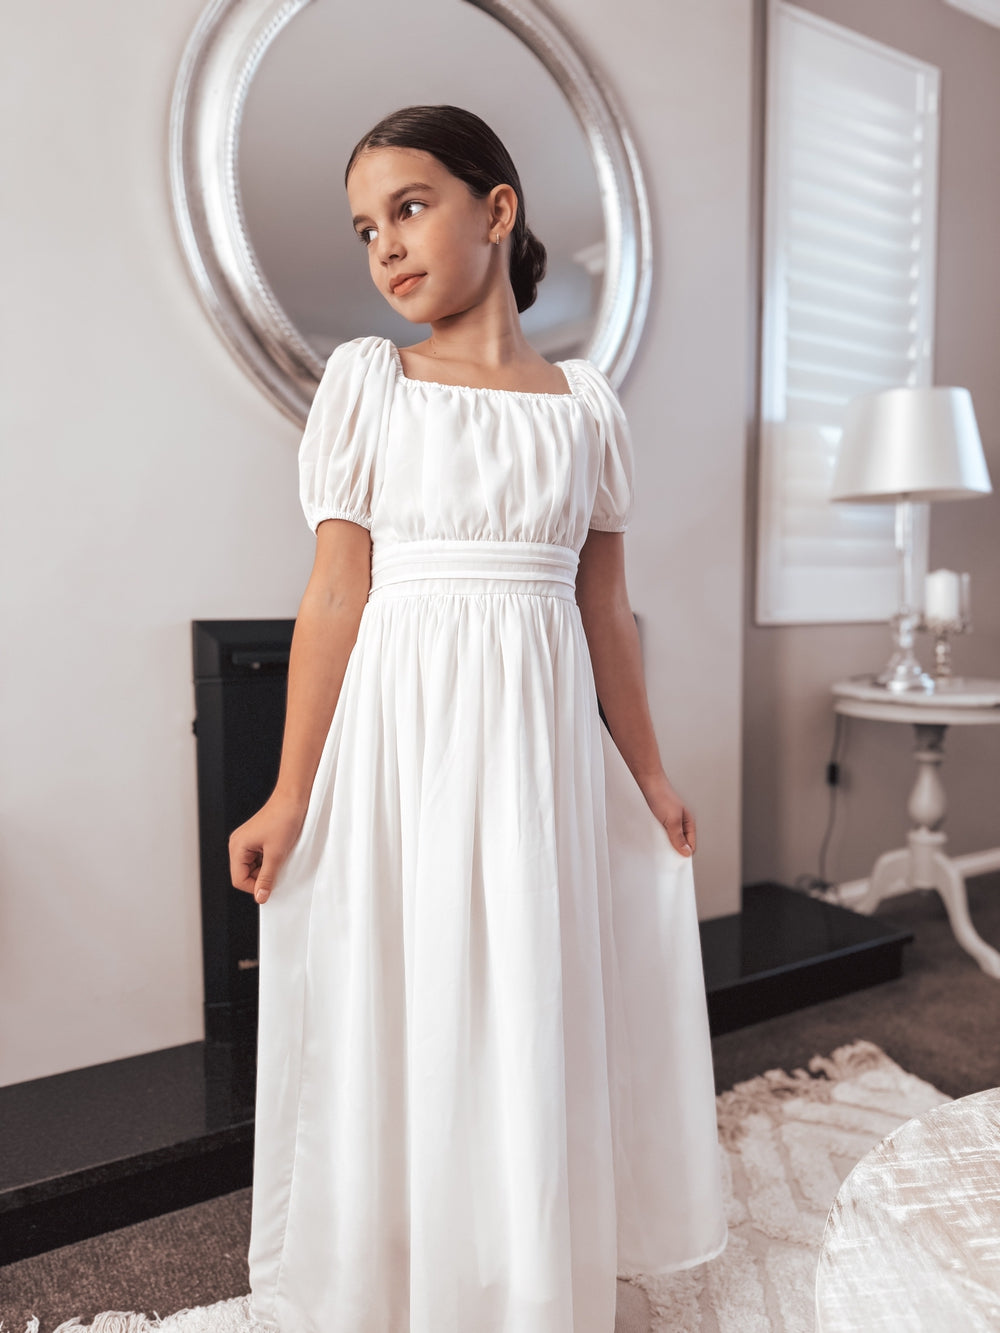 Emilia Girls White Dress - Flower Girl Dresses